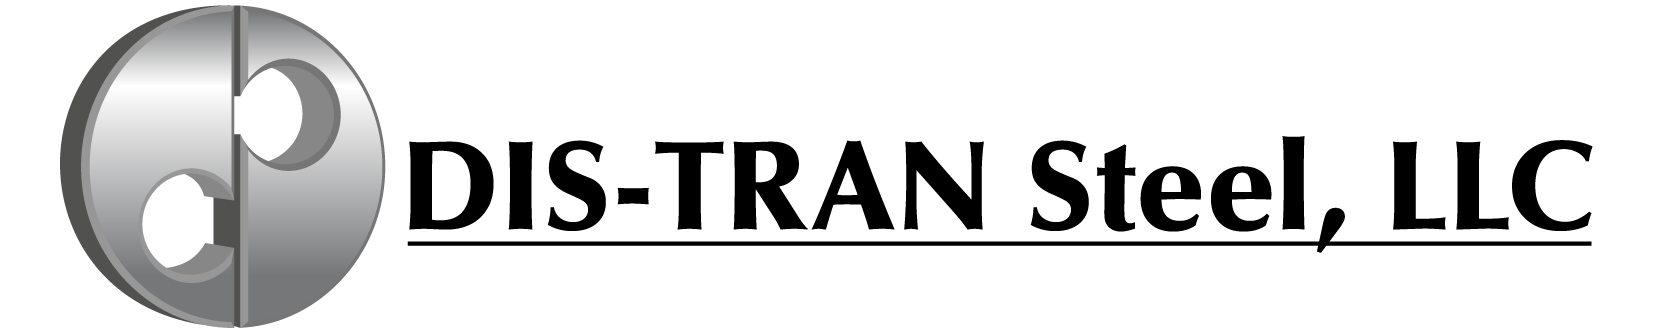 Image result for distran steel logo